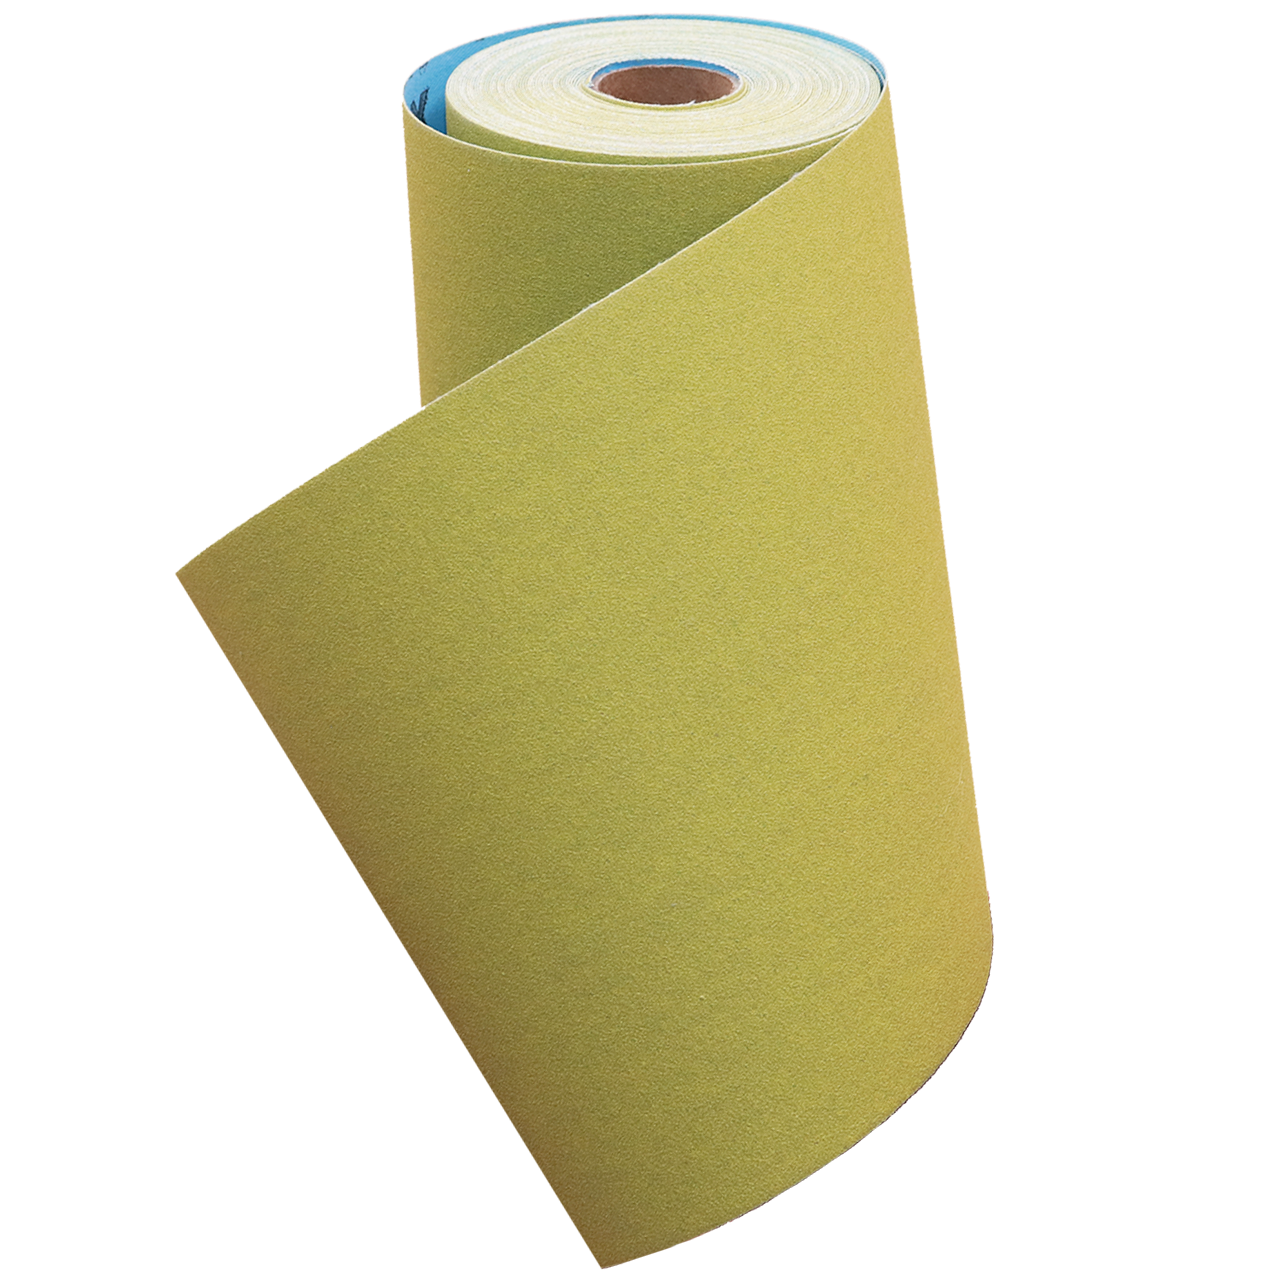 Klingspor Abrasives Shop Roll, 6 Inch x 10MT (32.8FT) 100 Grit, J-Flex Cloth Backed Aluminum Oxide